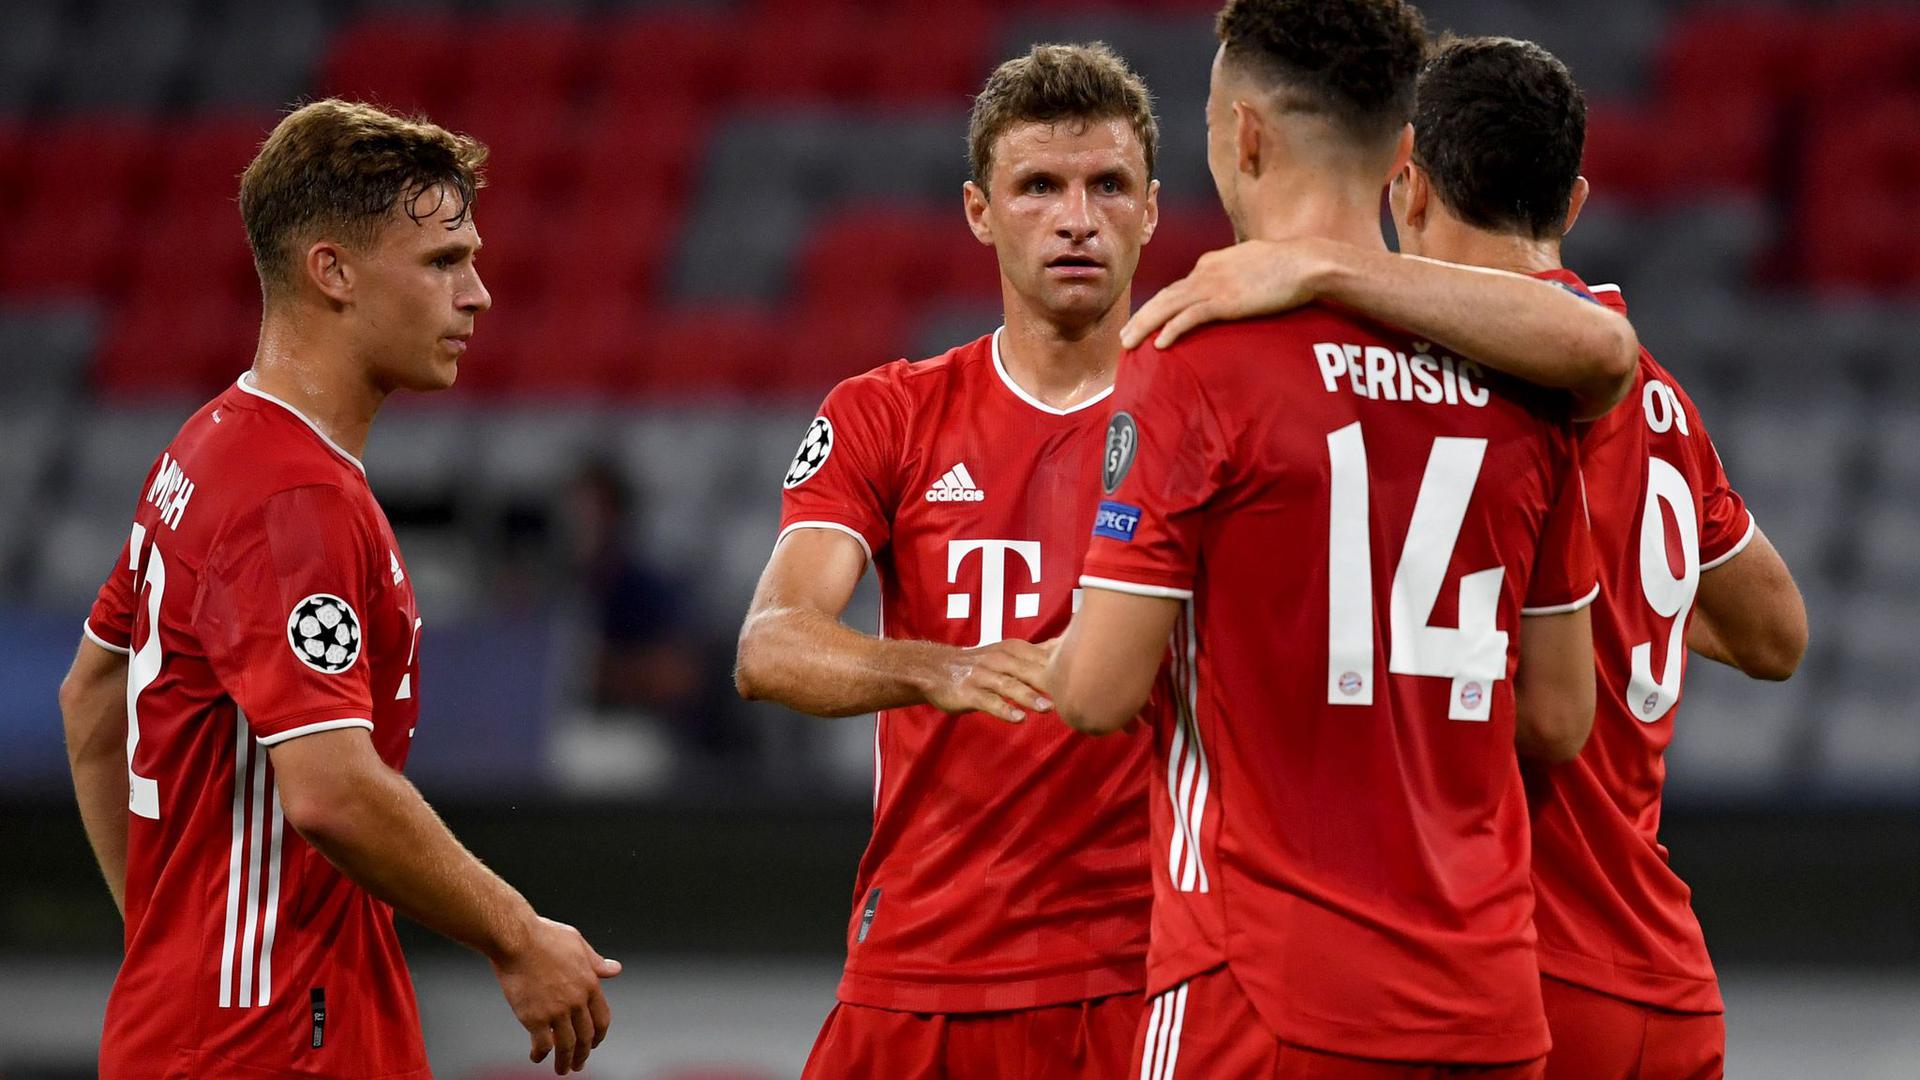 Bayerns Ivan Perisic (2.v.r.) jubelt nach seinem Treffer zum 2:0 mit den Mannschaftskameraden Müller (2.v.l.), Lewandowski (r) und Kimmich (l).